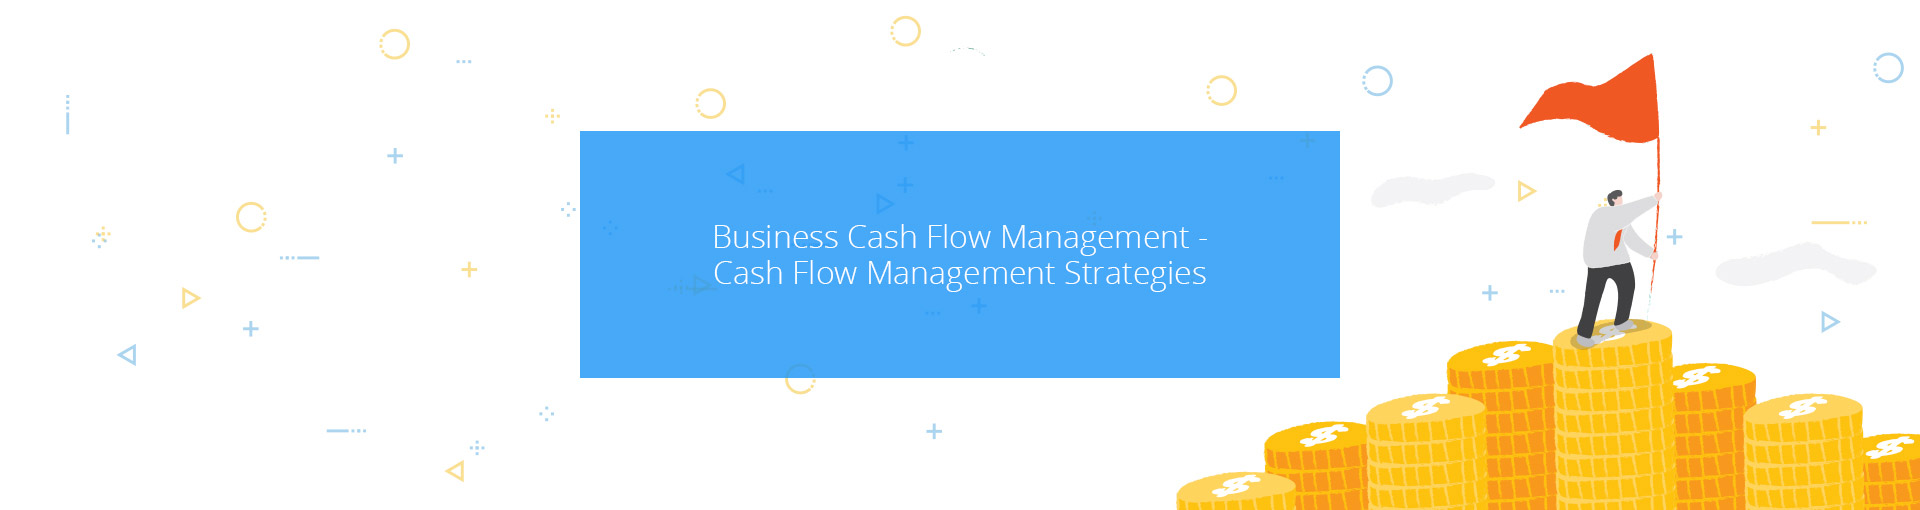 Business Cash Flow Management - Cash Flow Management Strategies Featured Image